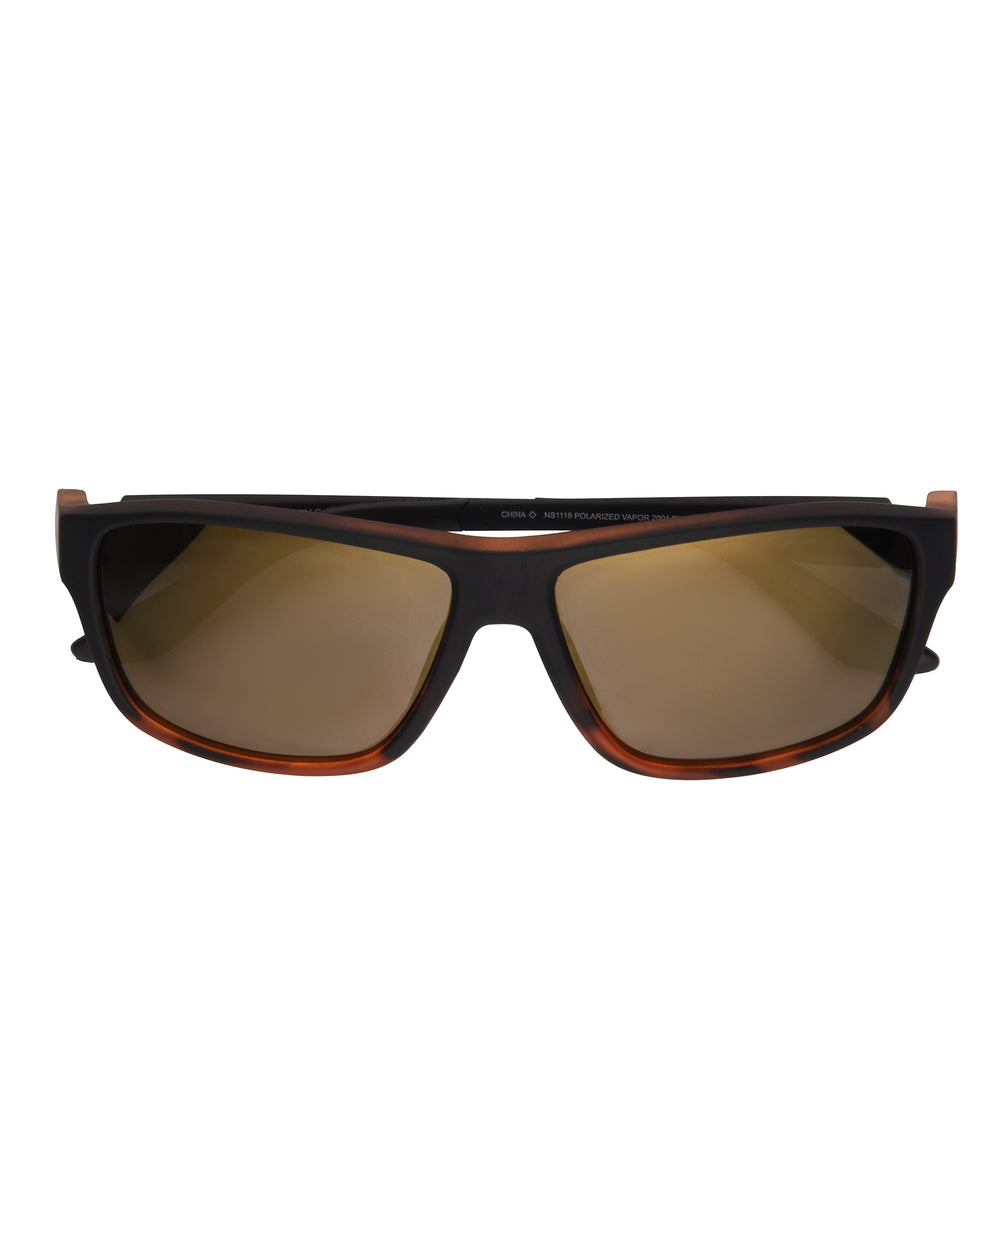 Body Glove SPORT Round Clear Orange Mirrored Sunglasses 100%UV BGSPT 23 544  CLR